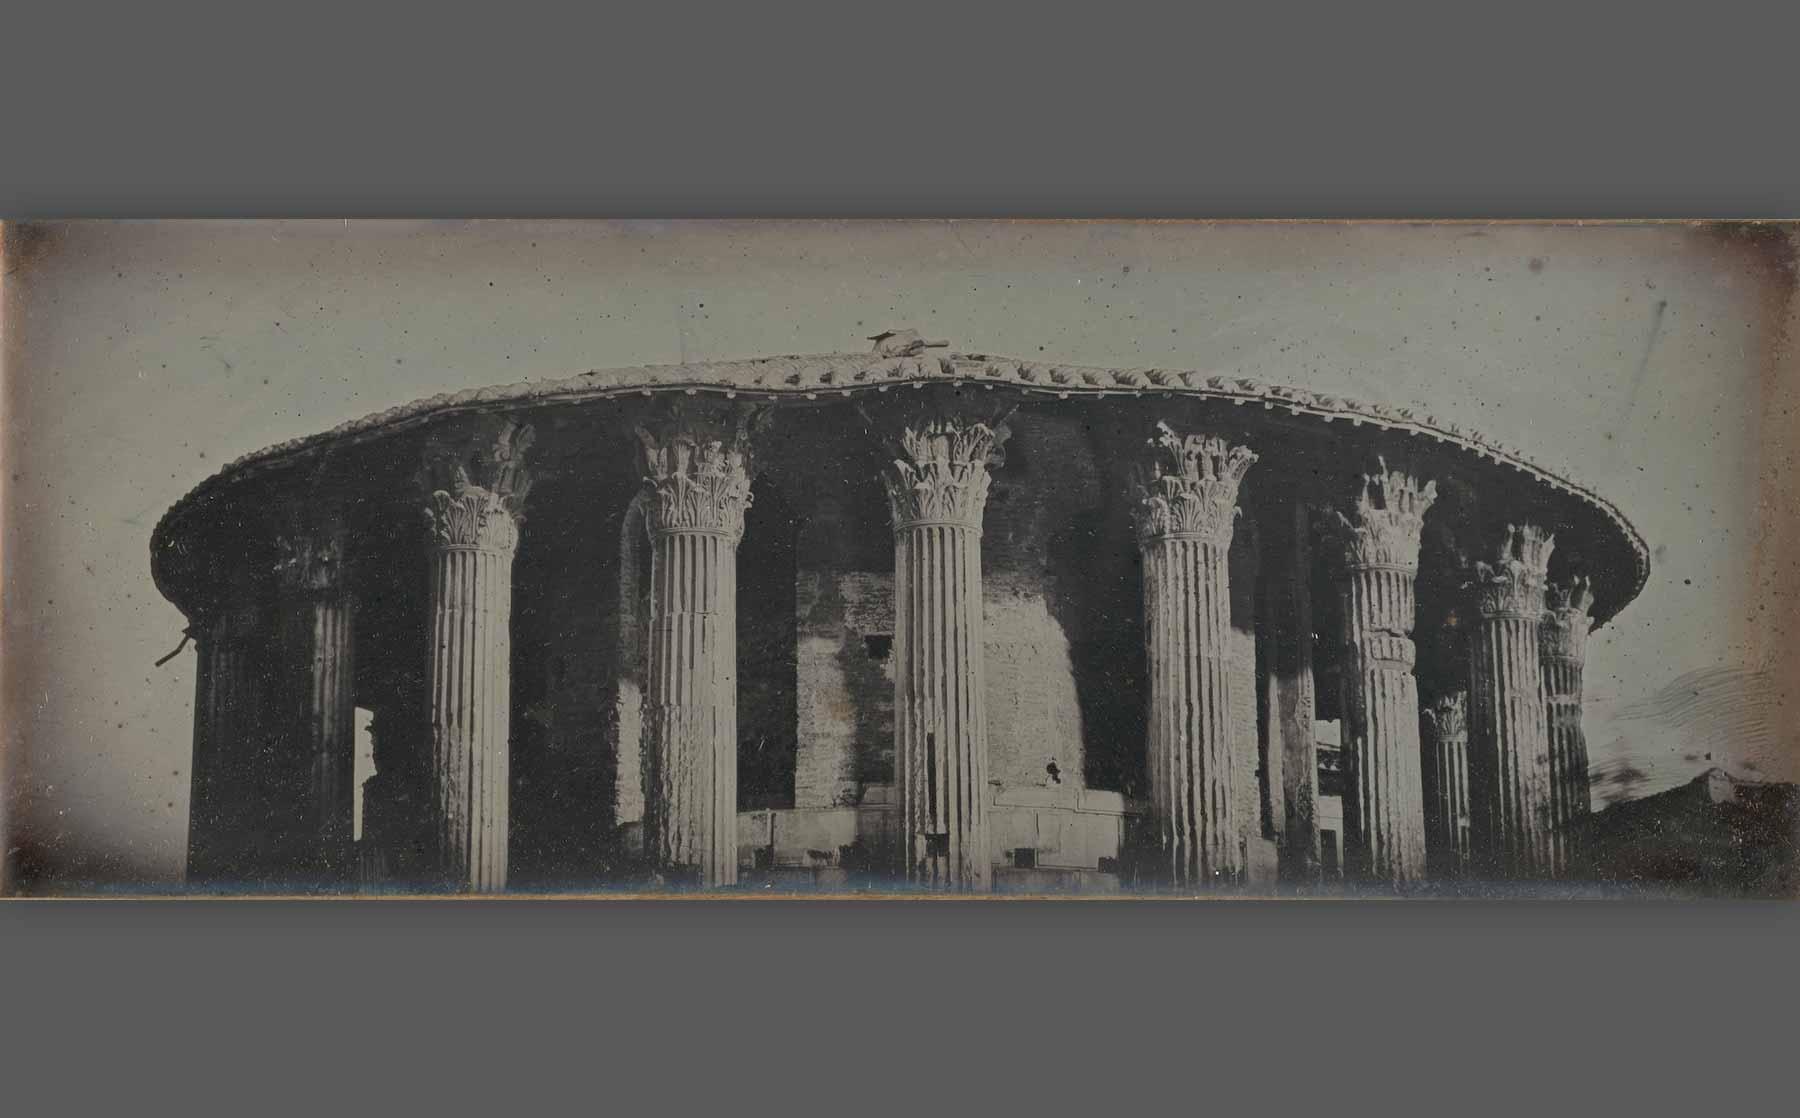 Girault de Prangey, “Temple of Vesta, Rome” (1842), daguerreotype.